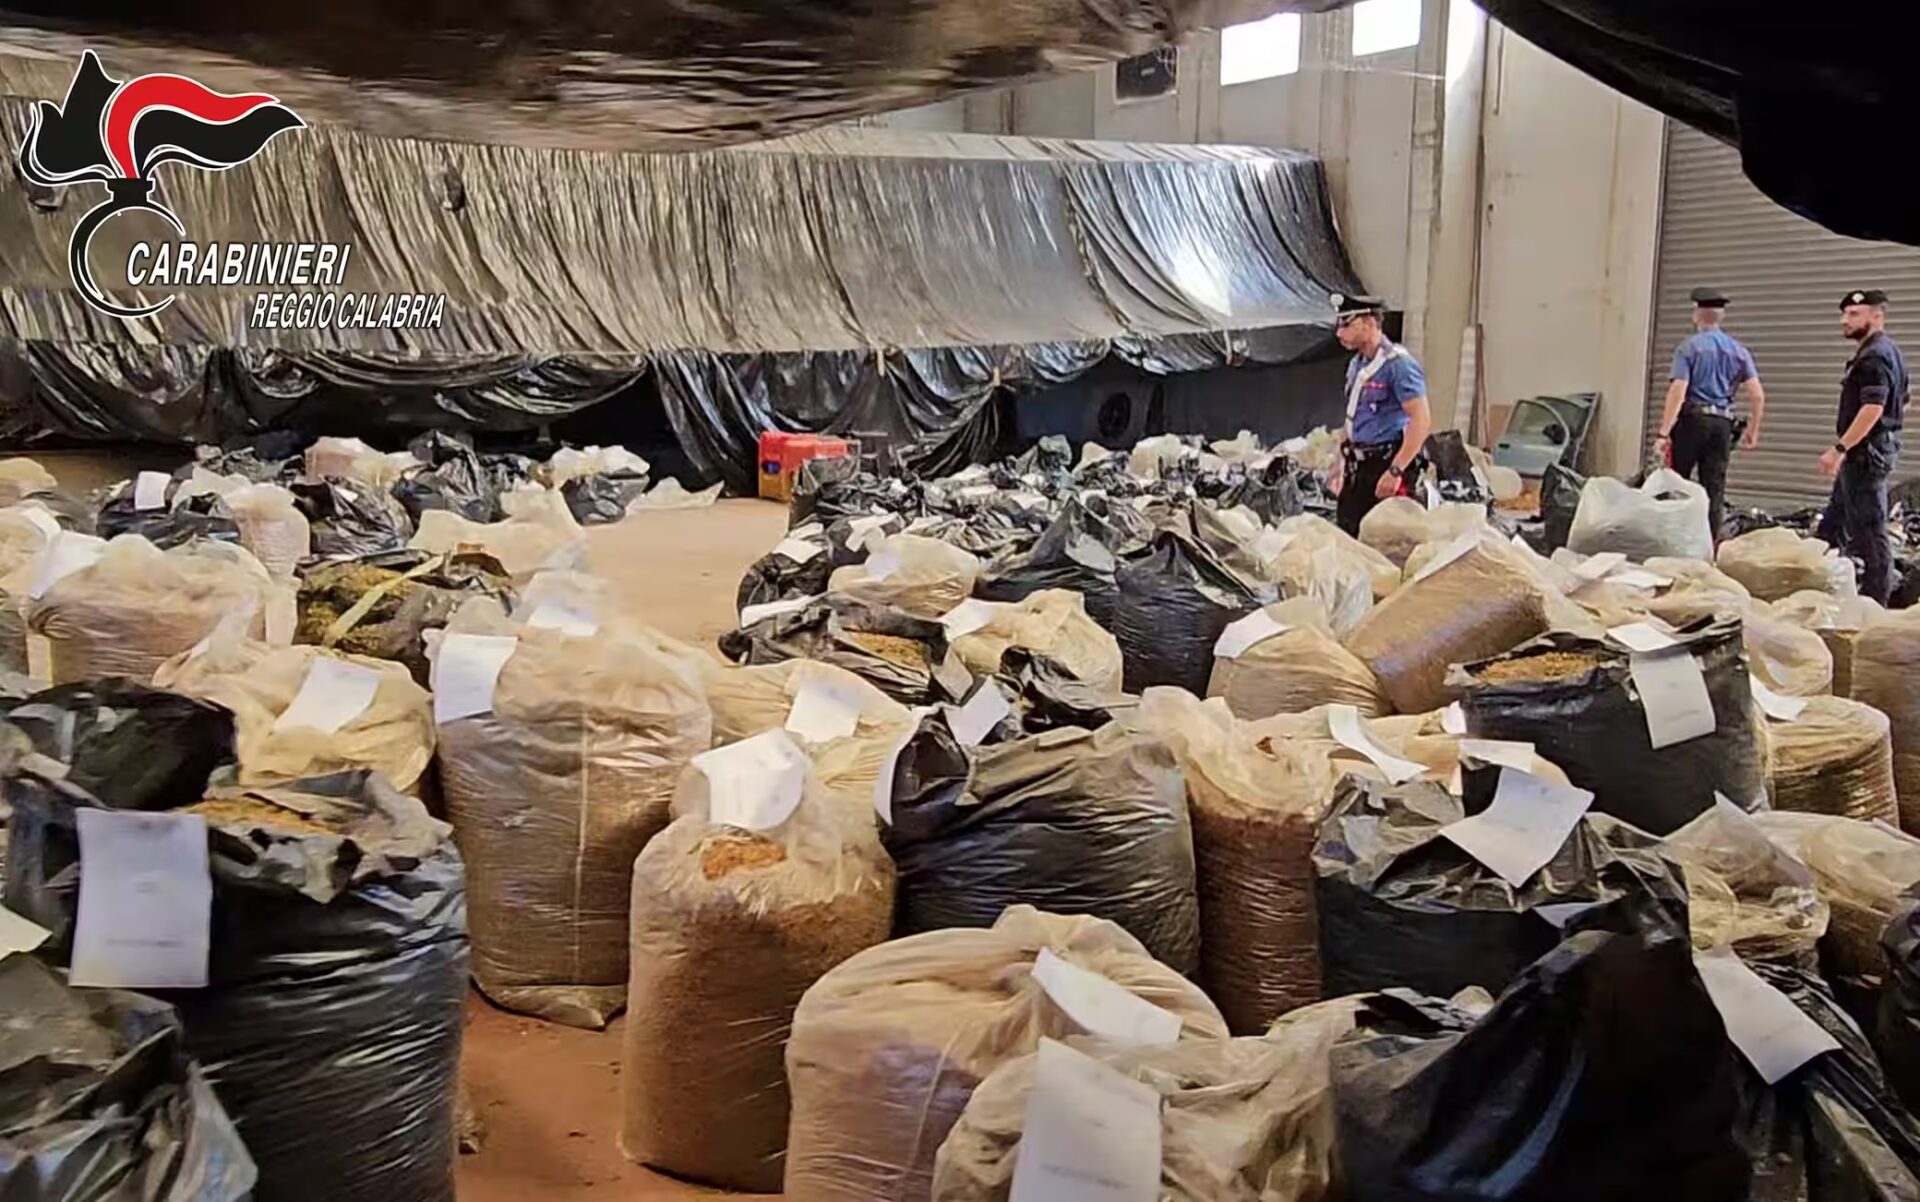  ‣ adn24 gioia tauro (rc) | sequestrate 3 tonnellate di droga - video